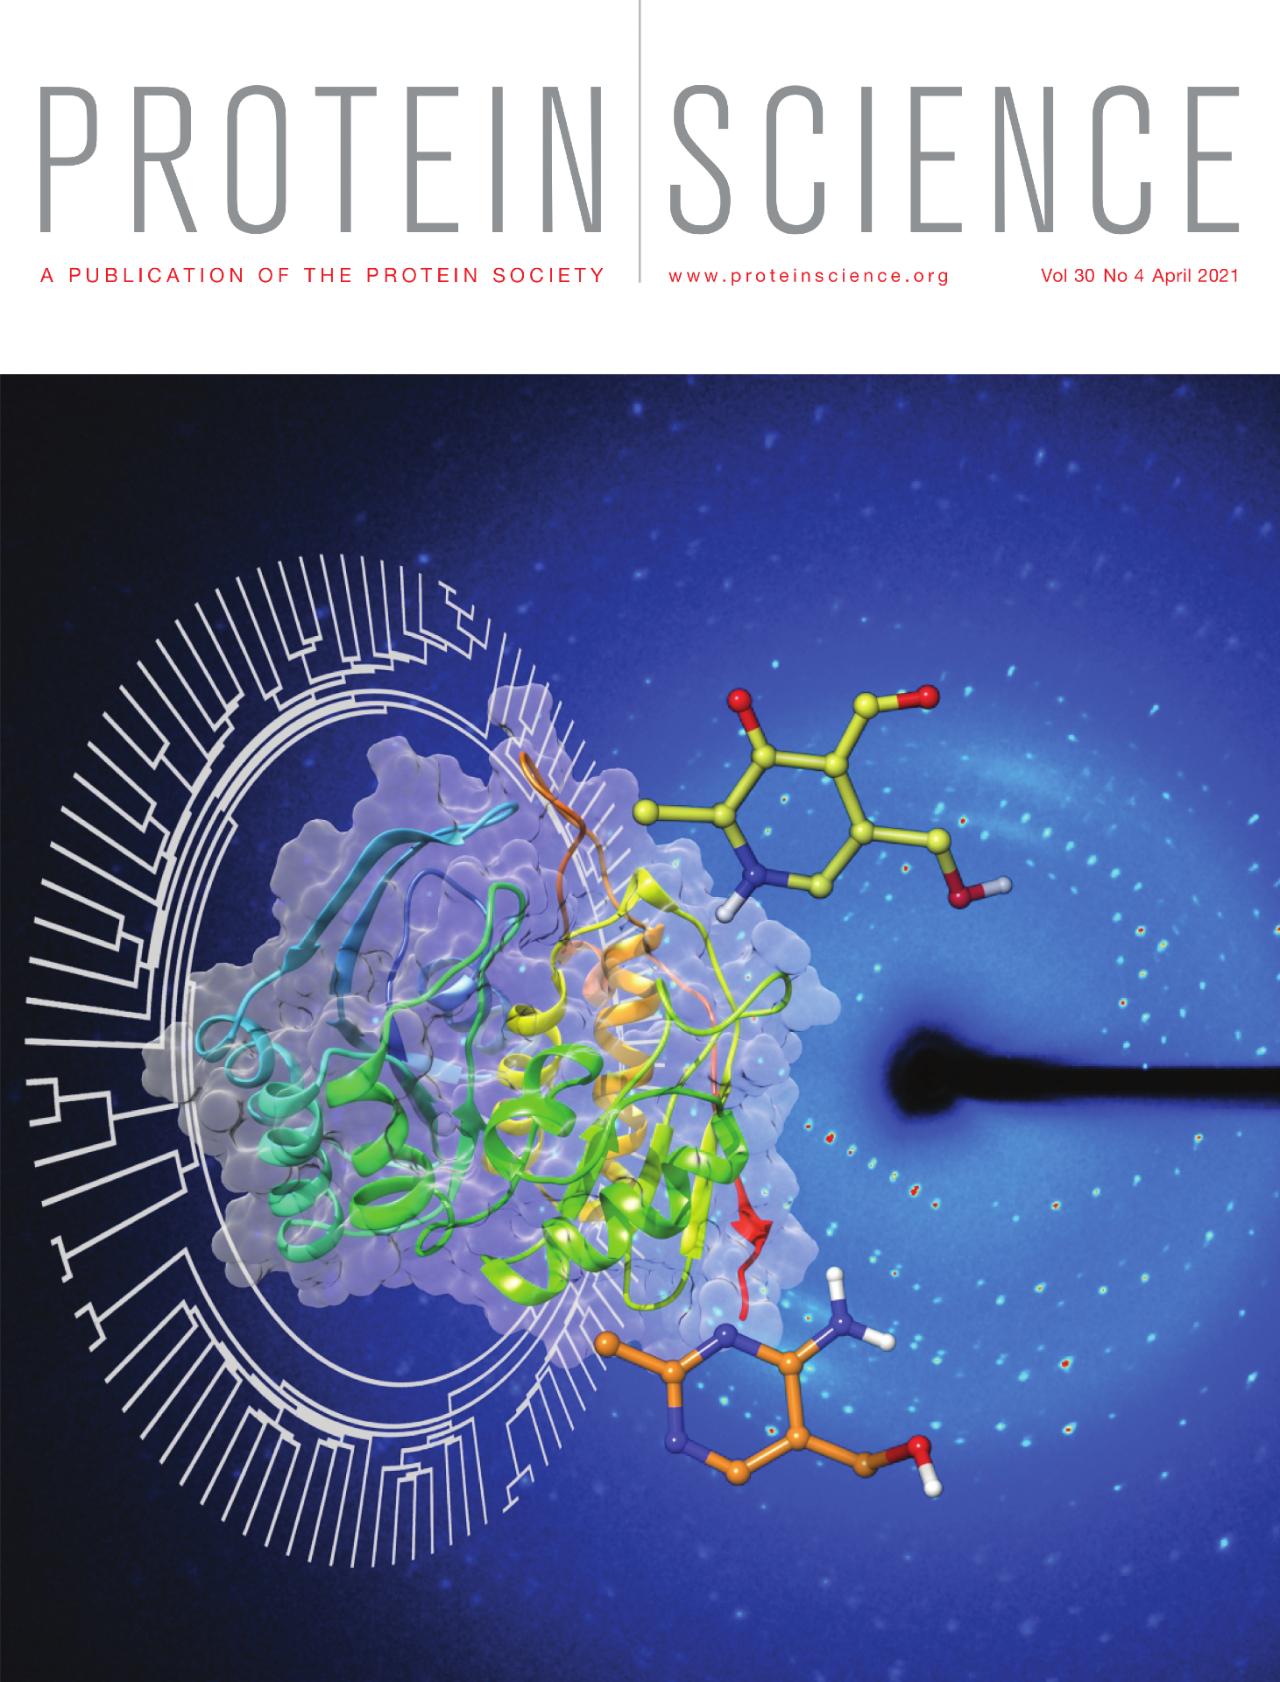 Revista Protein Science destaca en su portada de abril publicación en que  participaron académicos de la Facultad de Ciencias - Universidad de Chile